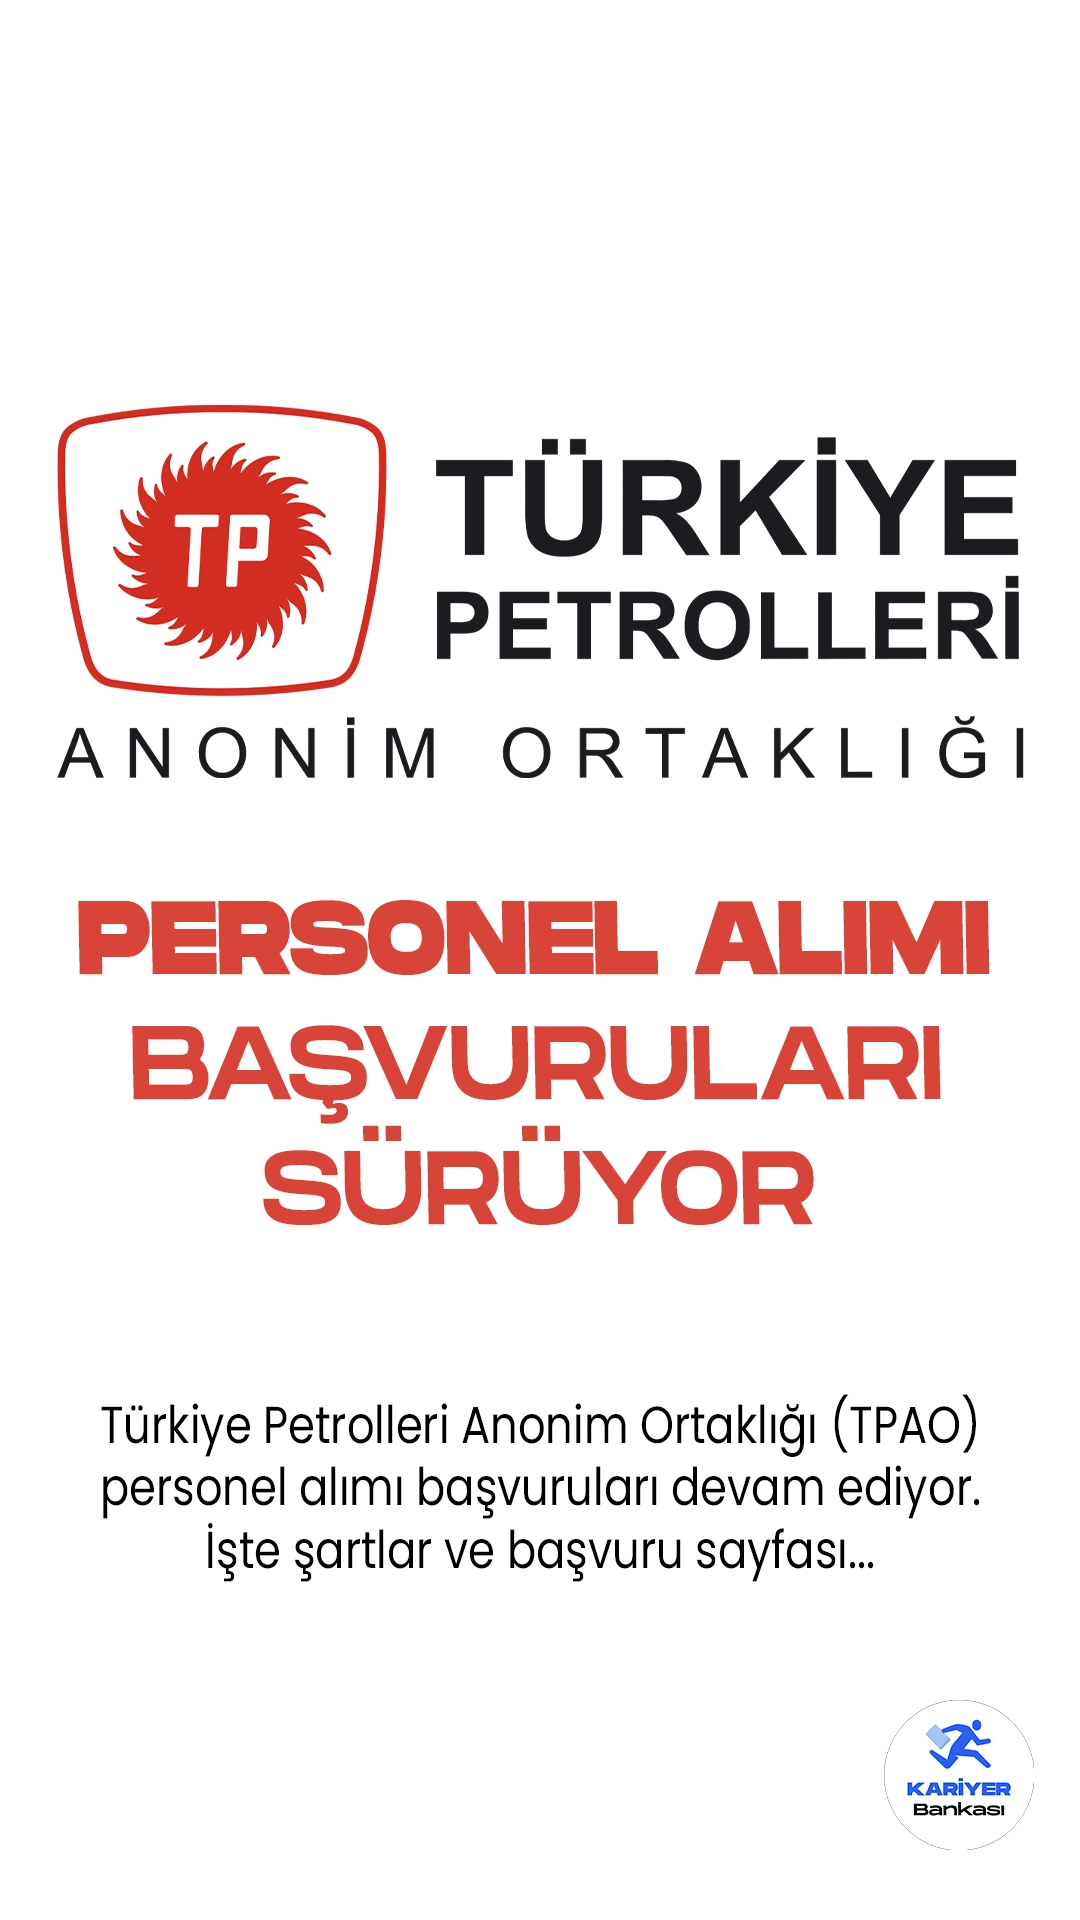 Türkiye Petrolleri Anonim Ortaklığı (TPAO) personel alımı başvuruları devam ediyor. İlgili alım duyurusunda, TPAO’ya mühendis, avukat ve uzman yardımcısı pozisyonları için personel alımı yapılacağı aktarıldı.Başvurular 13 Ekim 2023 tarihinde sona erecek.